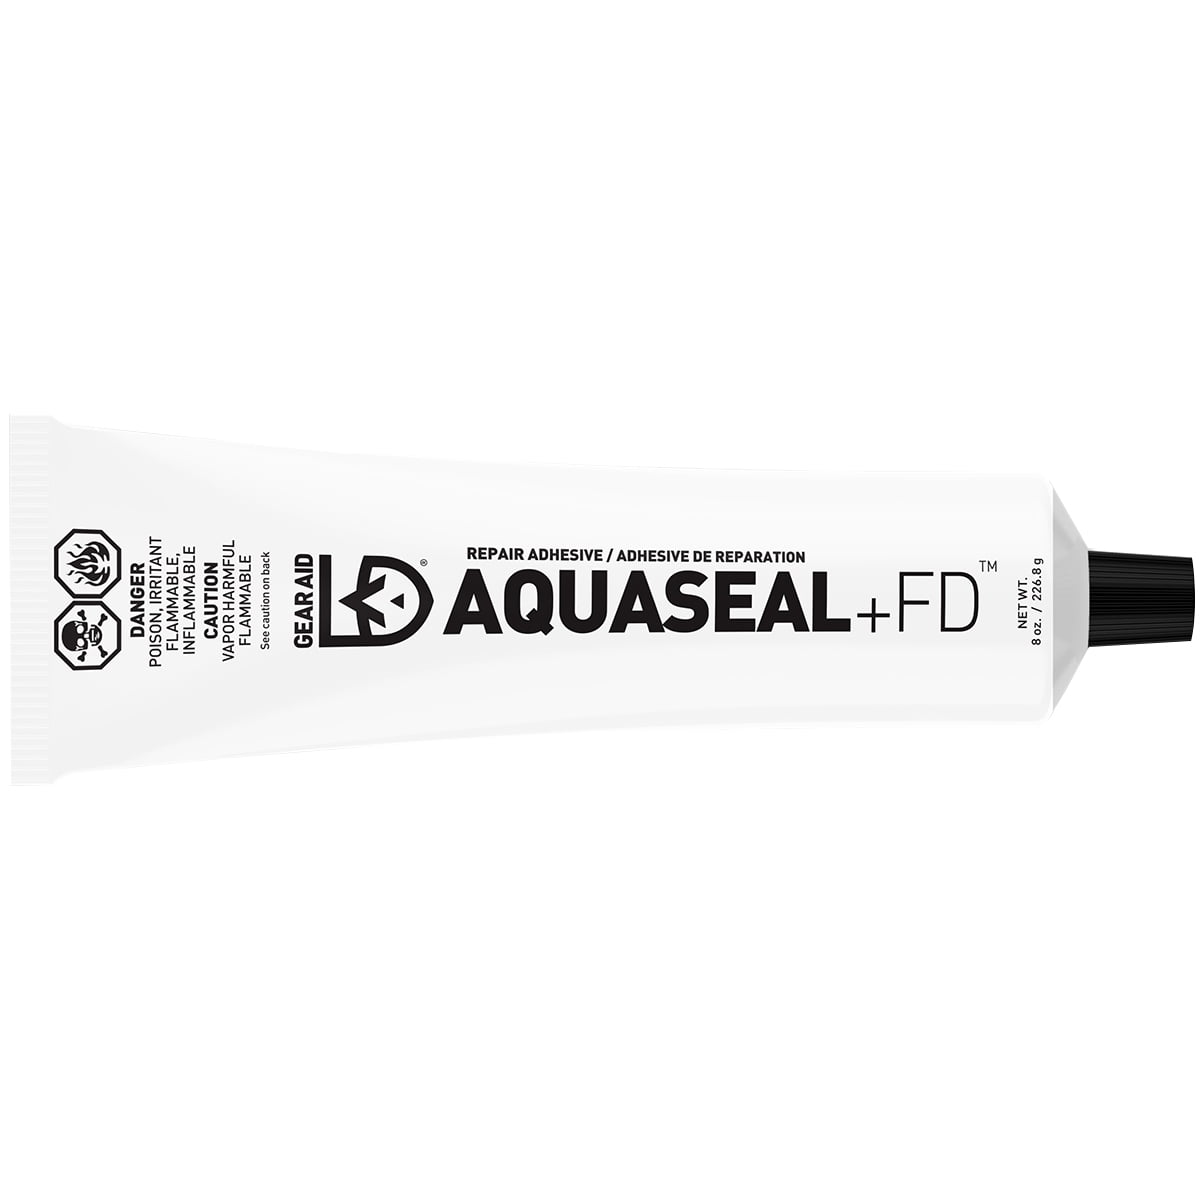 Gear Aid Aquaseal FD Repair Adhesive